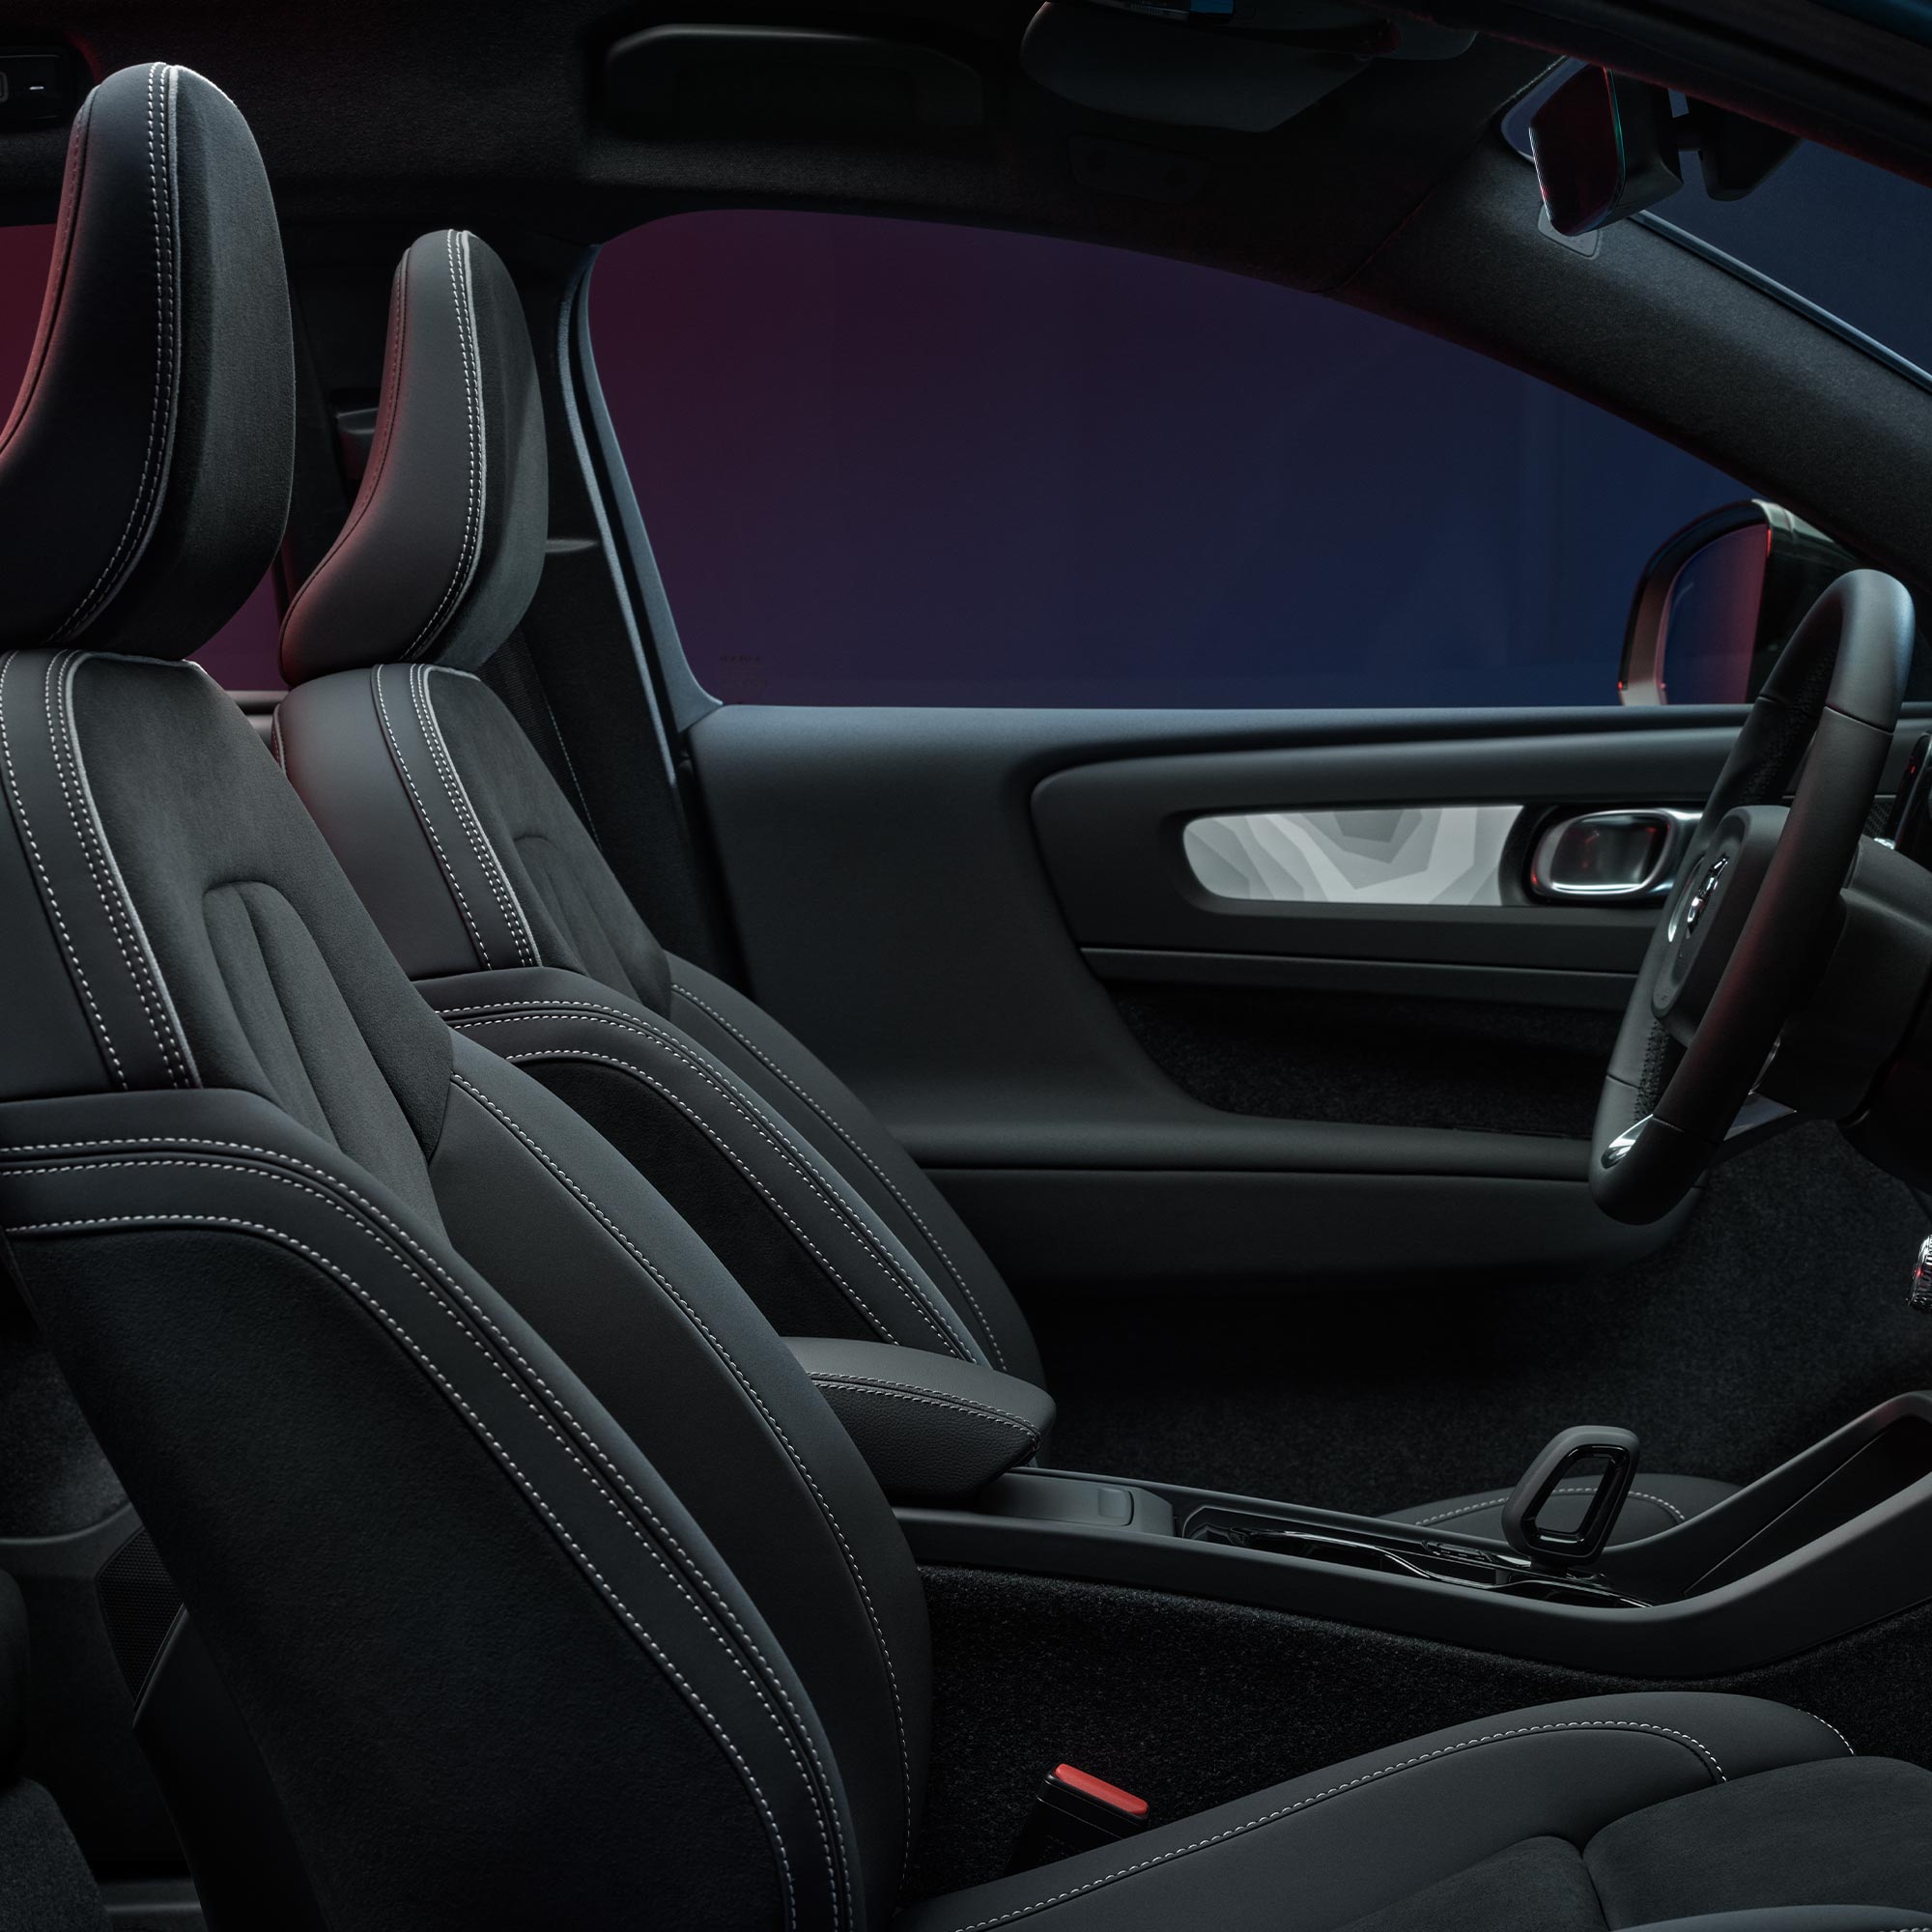 Unutrašnji prikaz prednjih sjedišta i volana modela Volvo C40 Recharge.